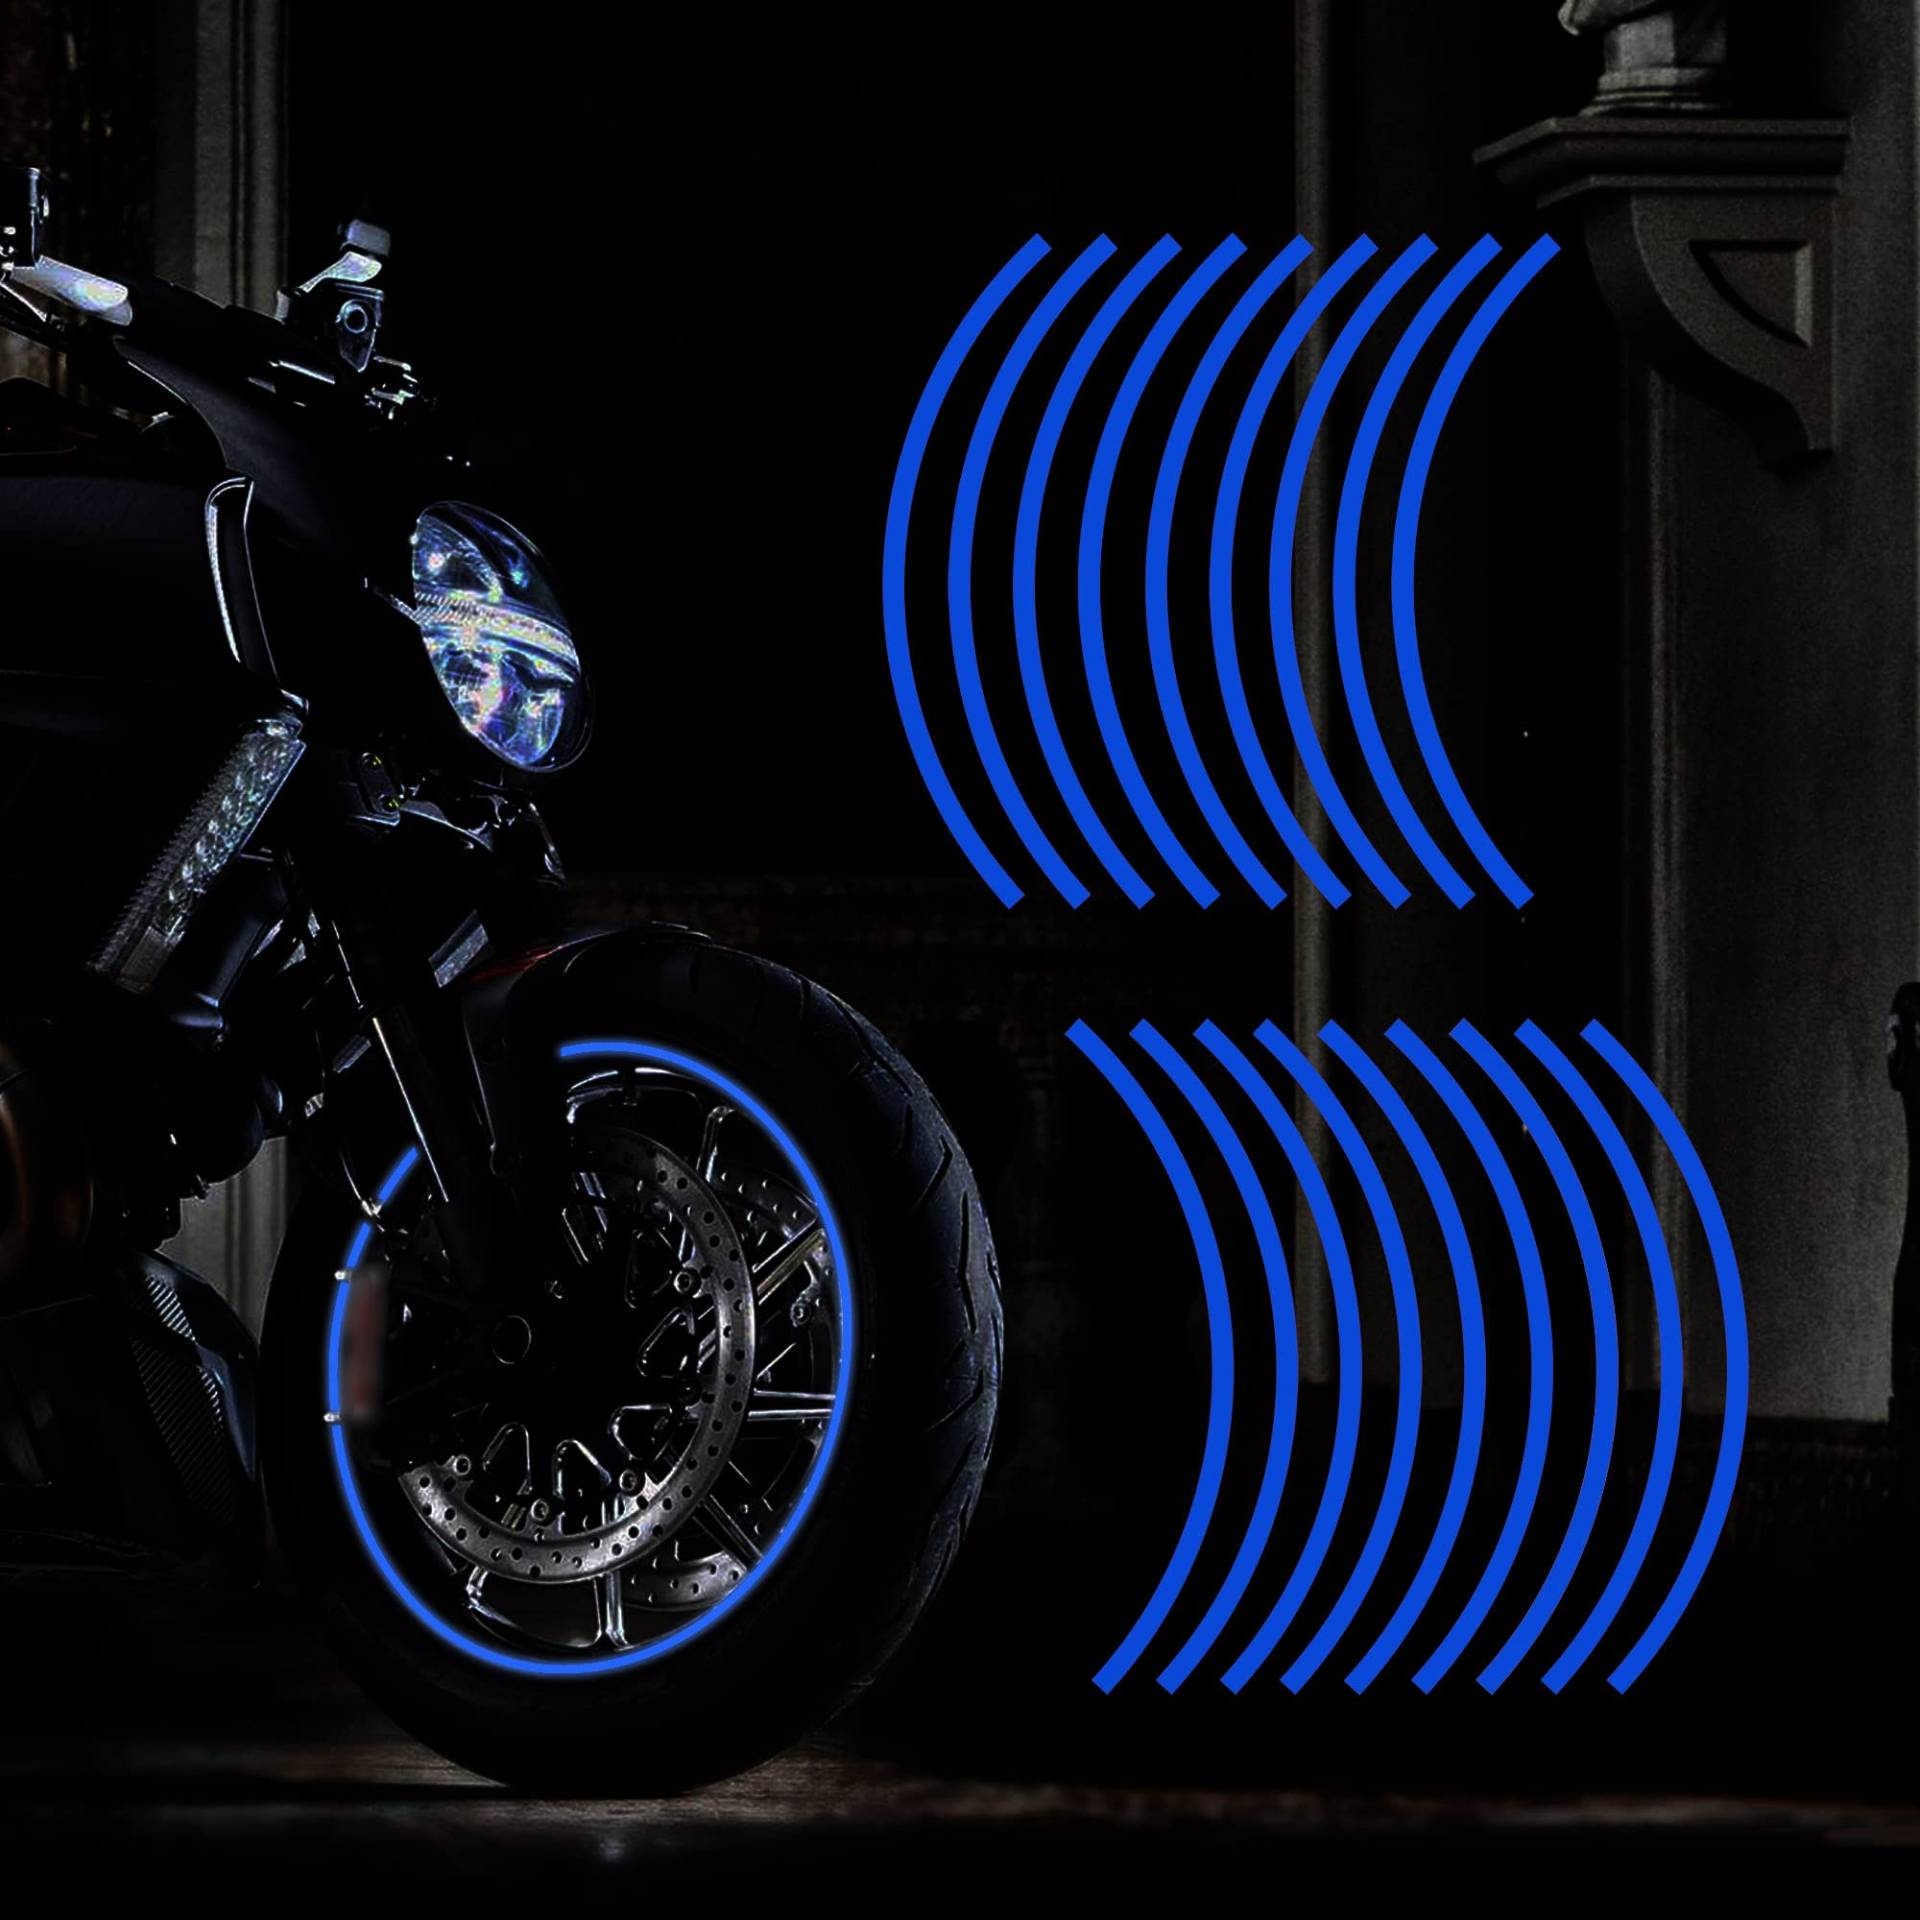 TOMALL 17'' Reflective Wheel Felgenstreifen Aufkleber für Motorradräder Auto Radfahren Fahrrad Fahrrad Nacht Reflektierende Sicherheitsdekoration Streifen Universal Felgenaufkleber (Blau) von TOMALL